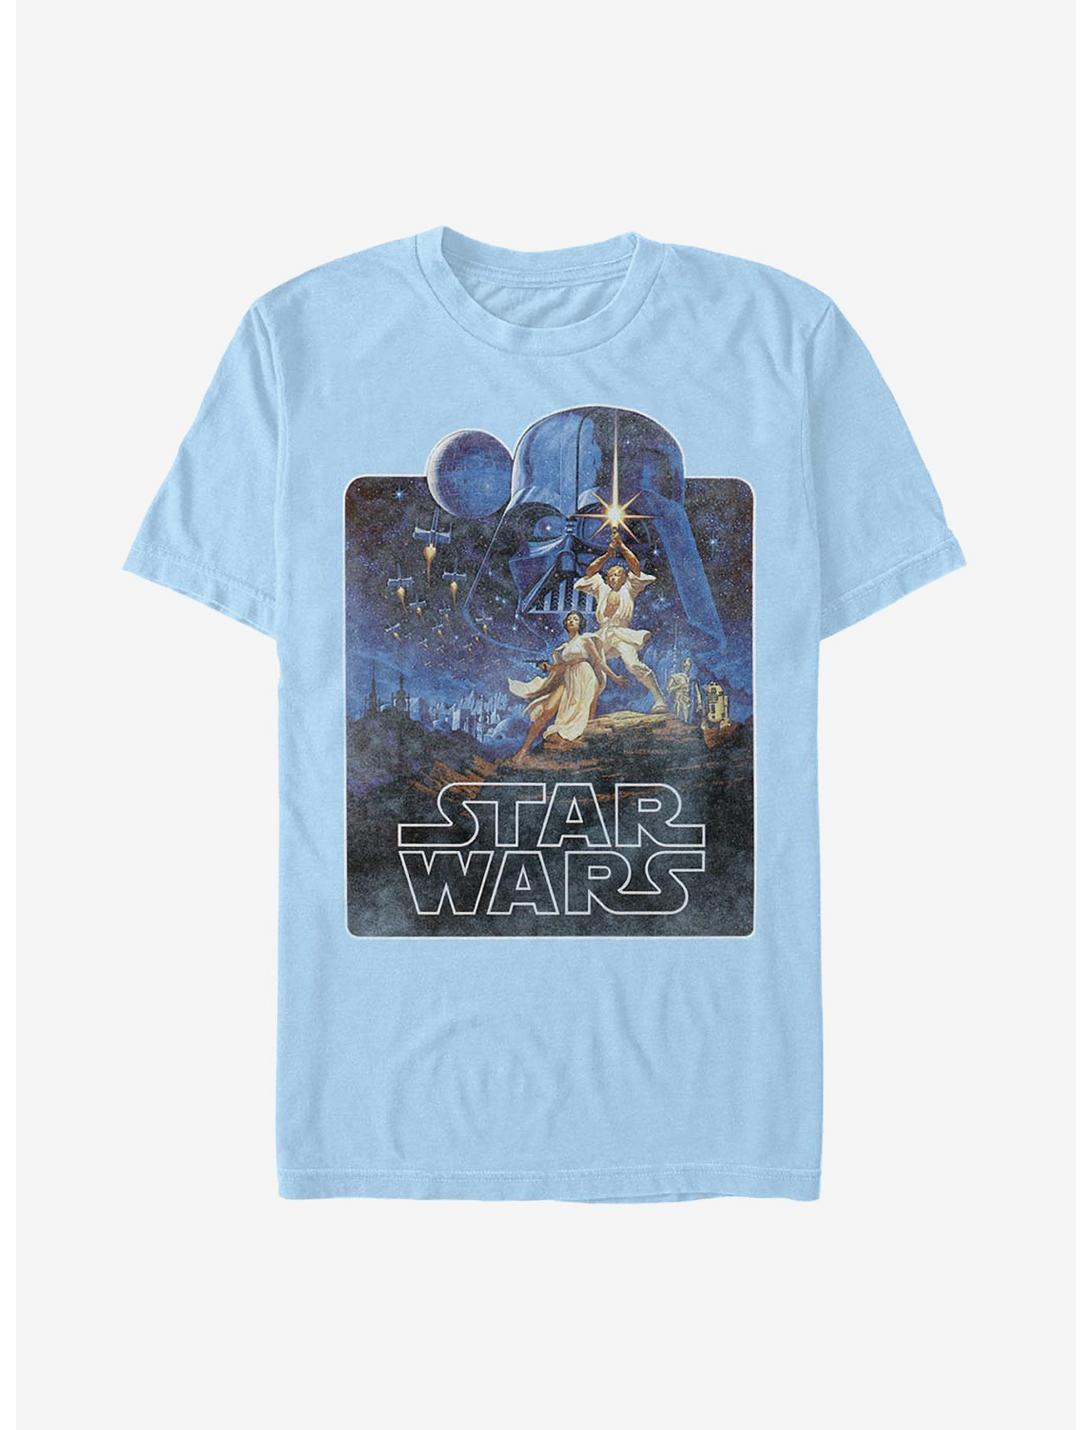 Star Wars Episode IV A New Hope 70's Throwback Poster T-Shirt, LT BLUE, hi-res